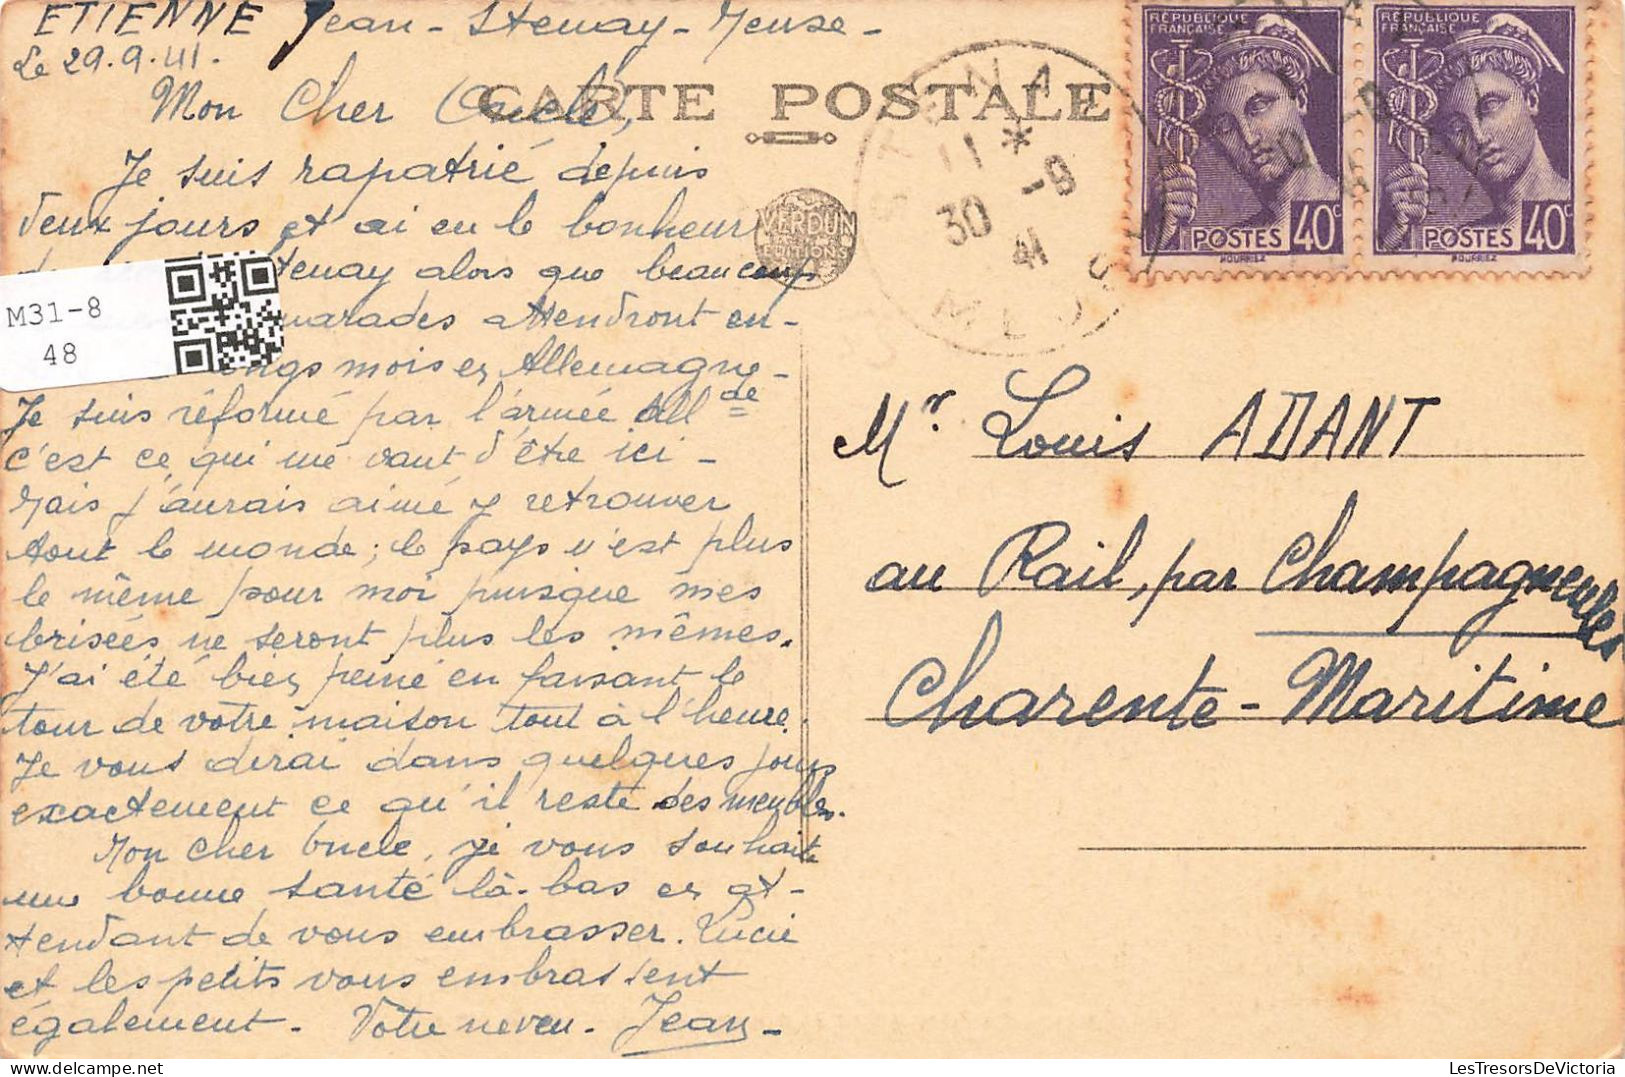 FRANCE - Stenay - Vue Générale Du Château Des Tilleuls - Carte Postale Ancienne - Stenay